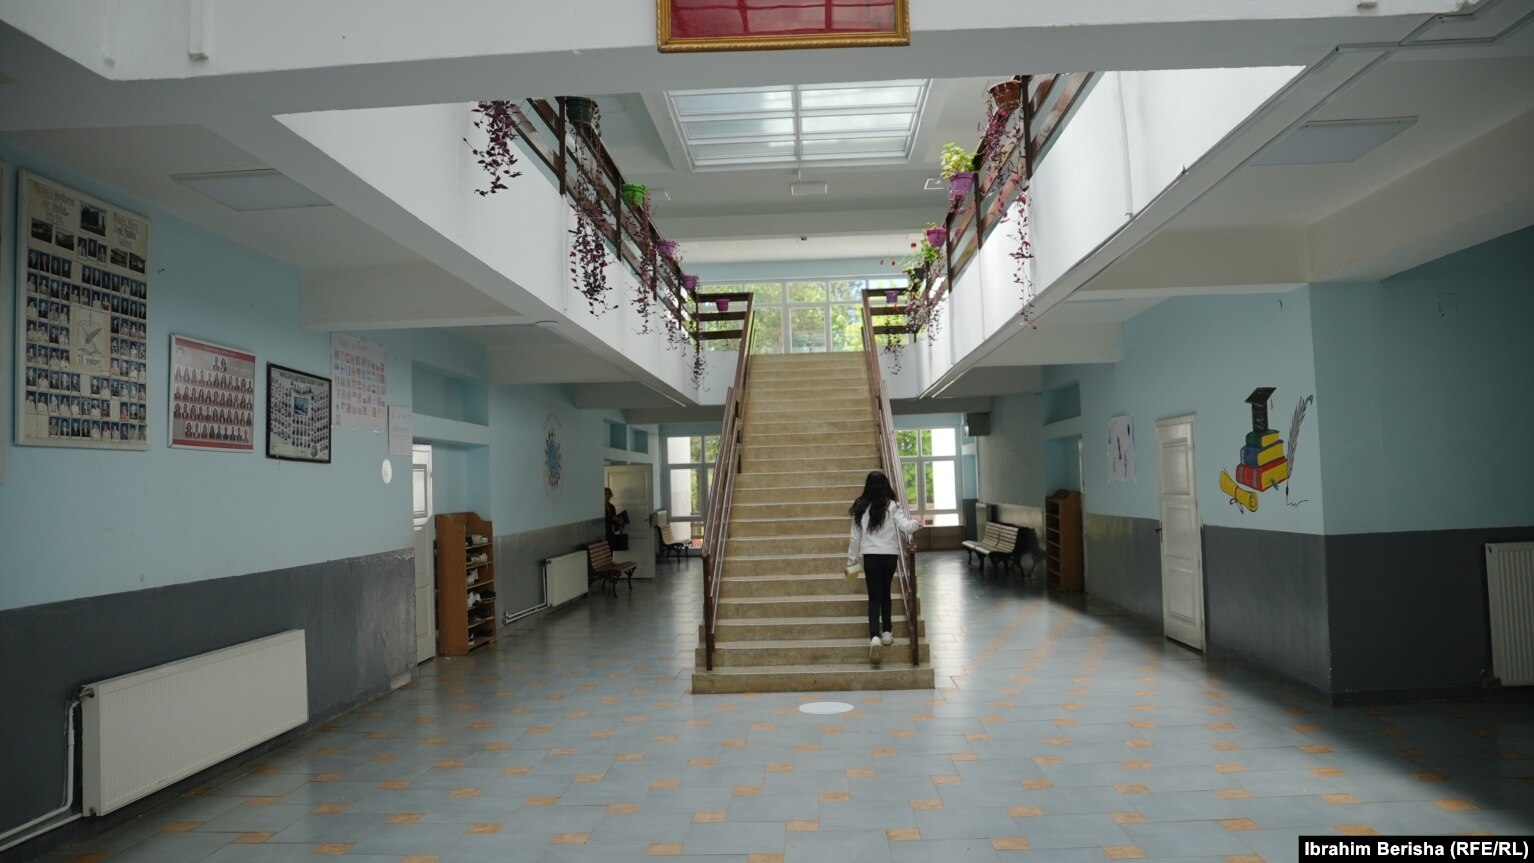 Shkolla "Zenel Hajdini" në Gadime, Lipjan, ku mbajnë mësimin shtesë rreth 65 nxënës.